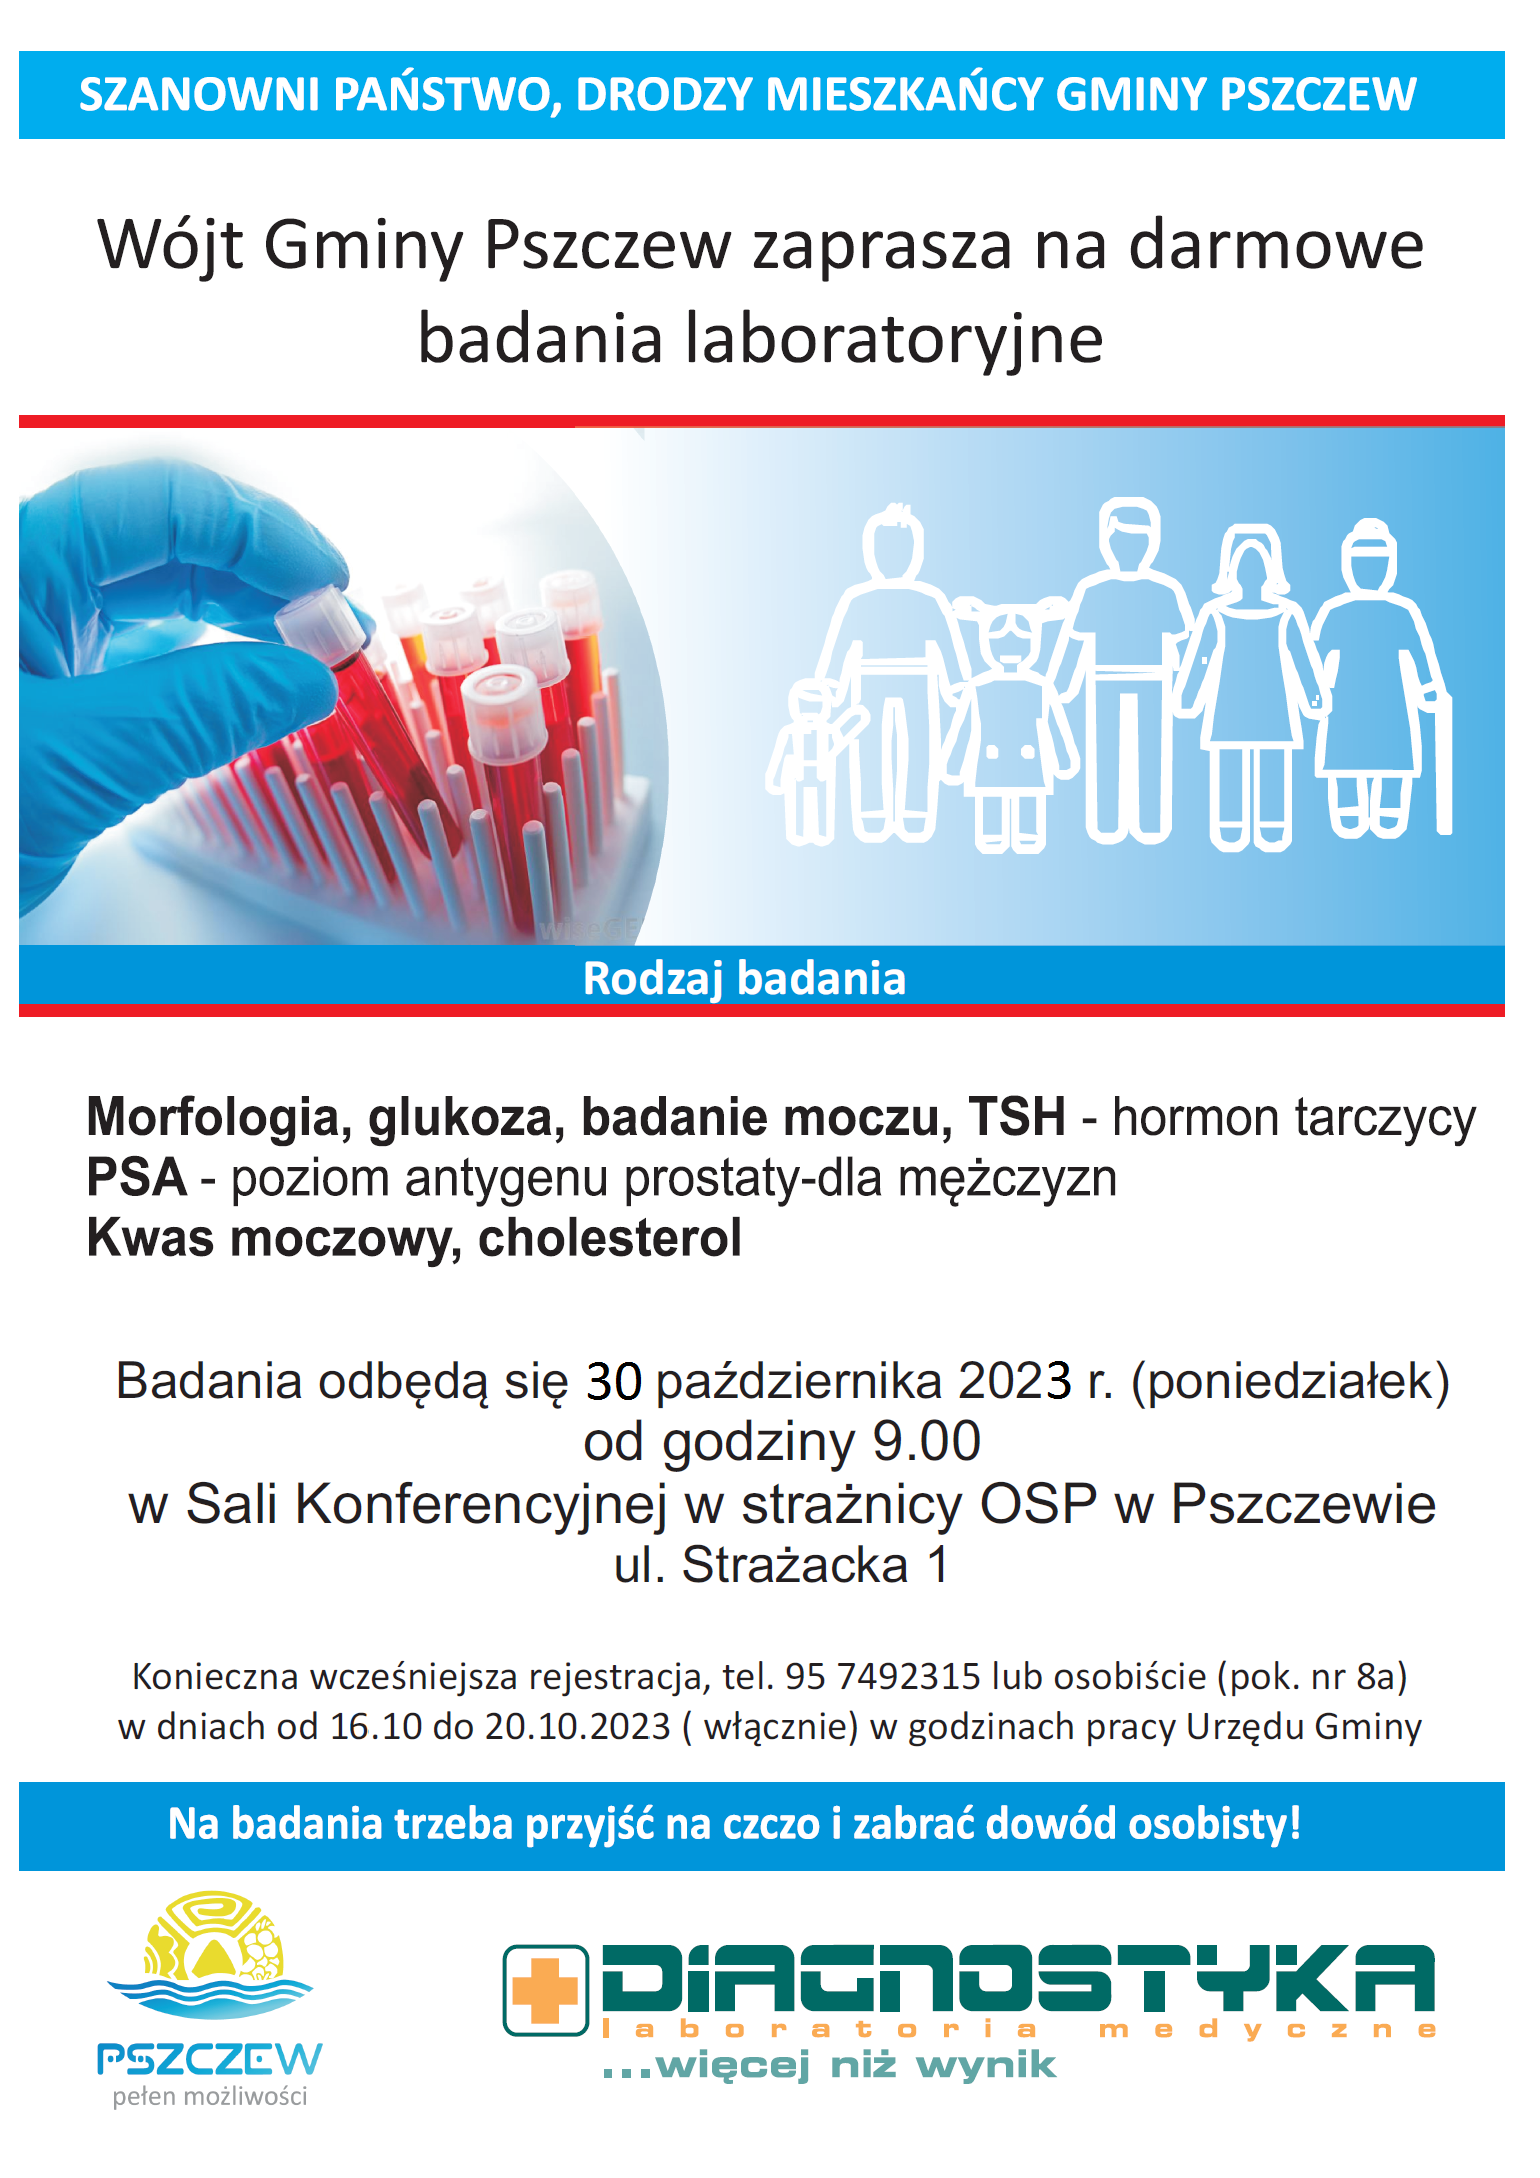 Bezpłatne badania laboratoryjne dla mieszkańców gminy Pszczew 30 października